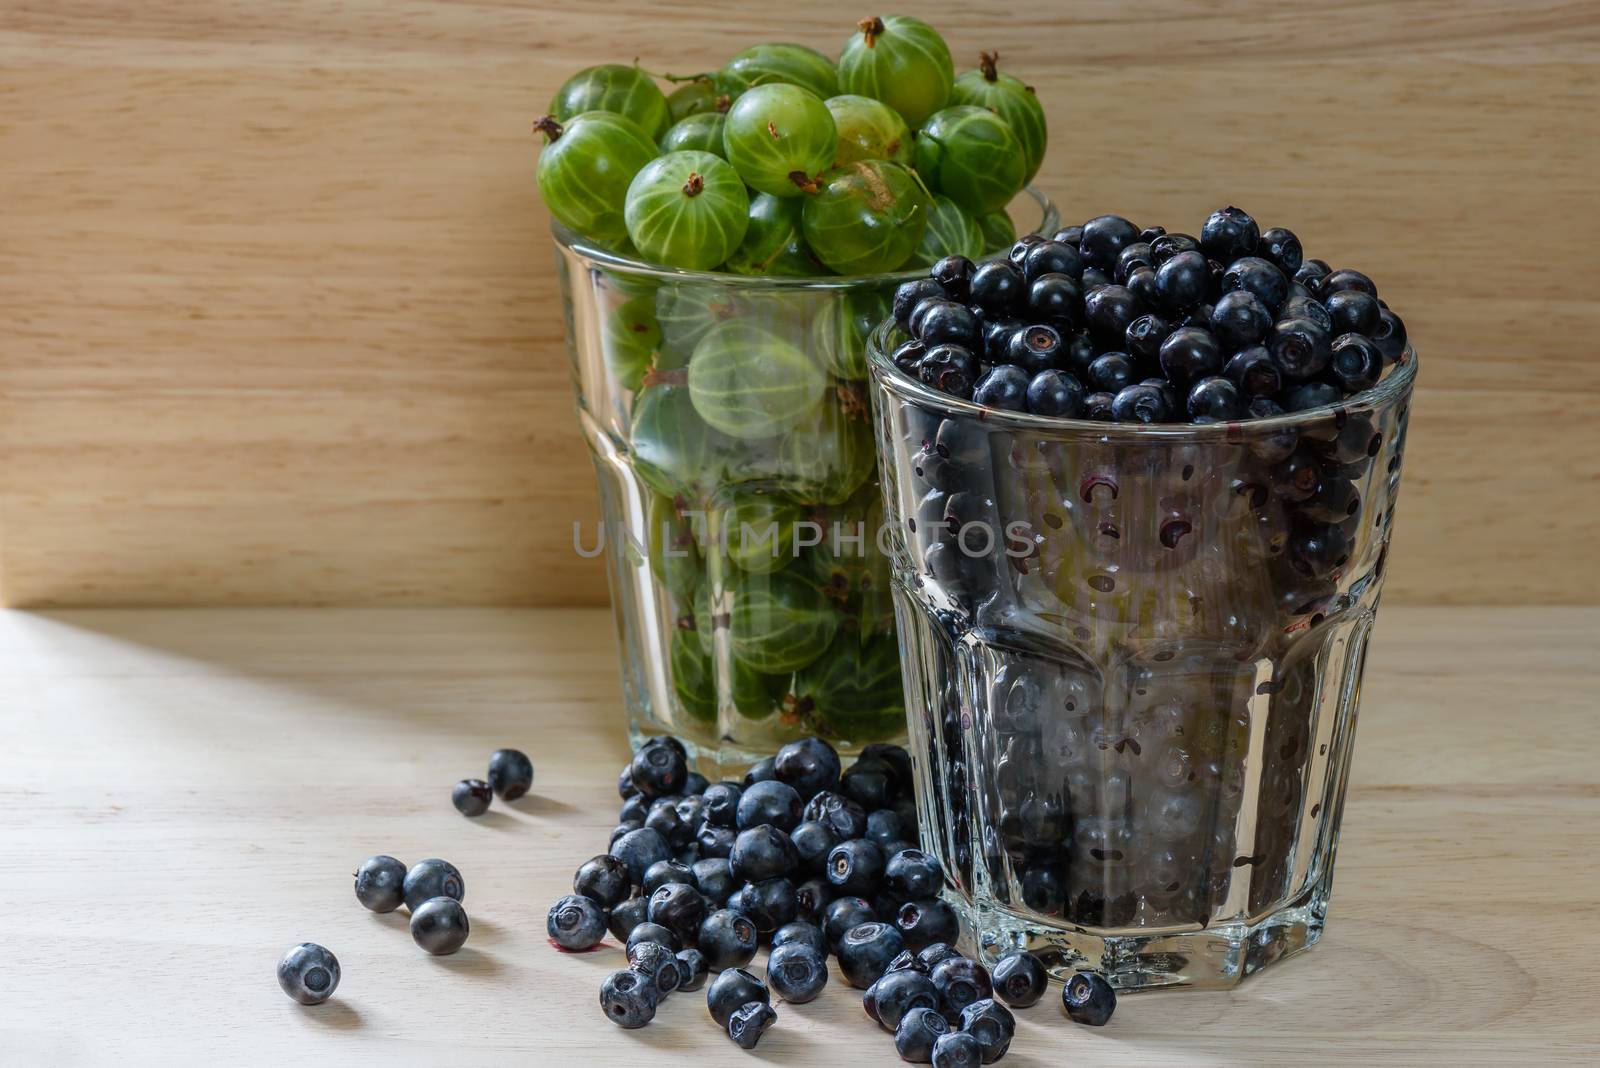 Blueberries and gooseberries in glass by Seva_blsv